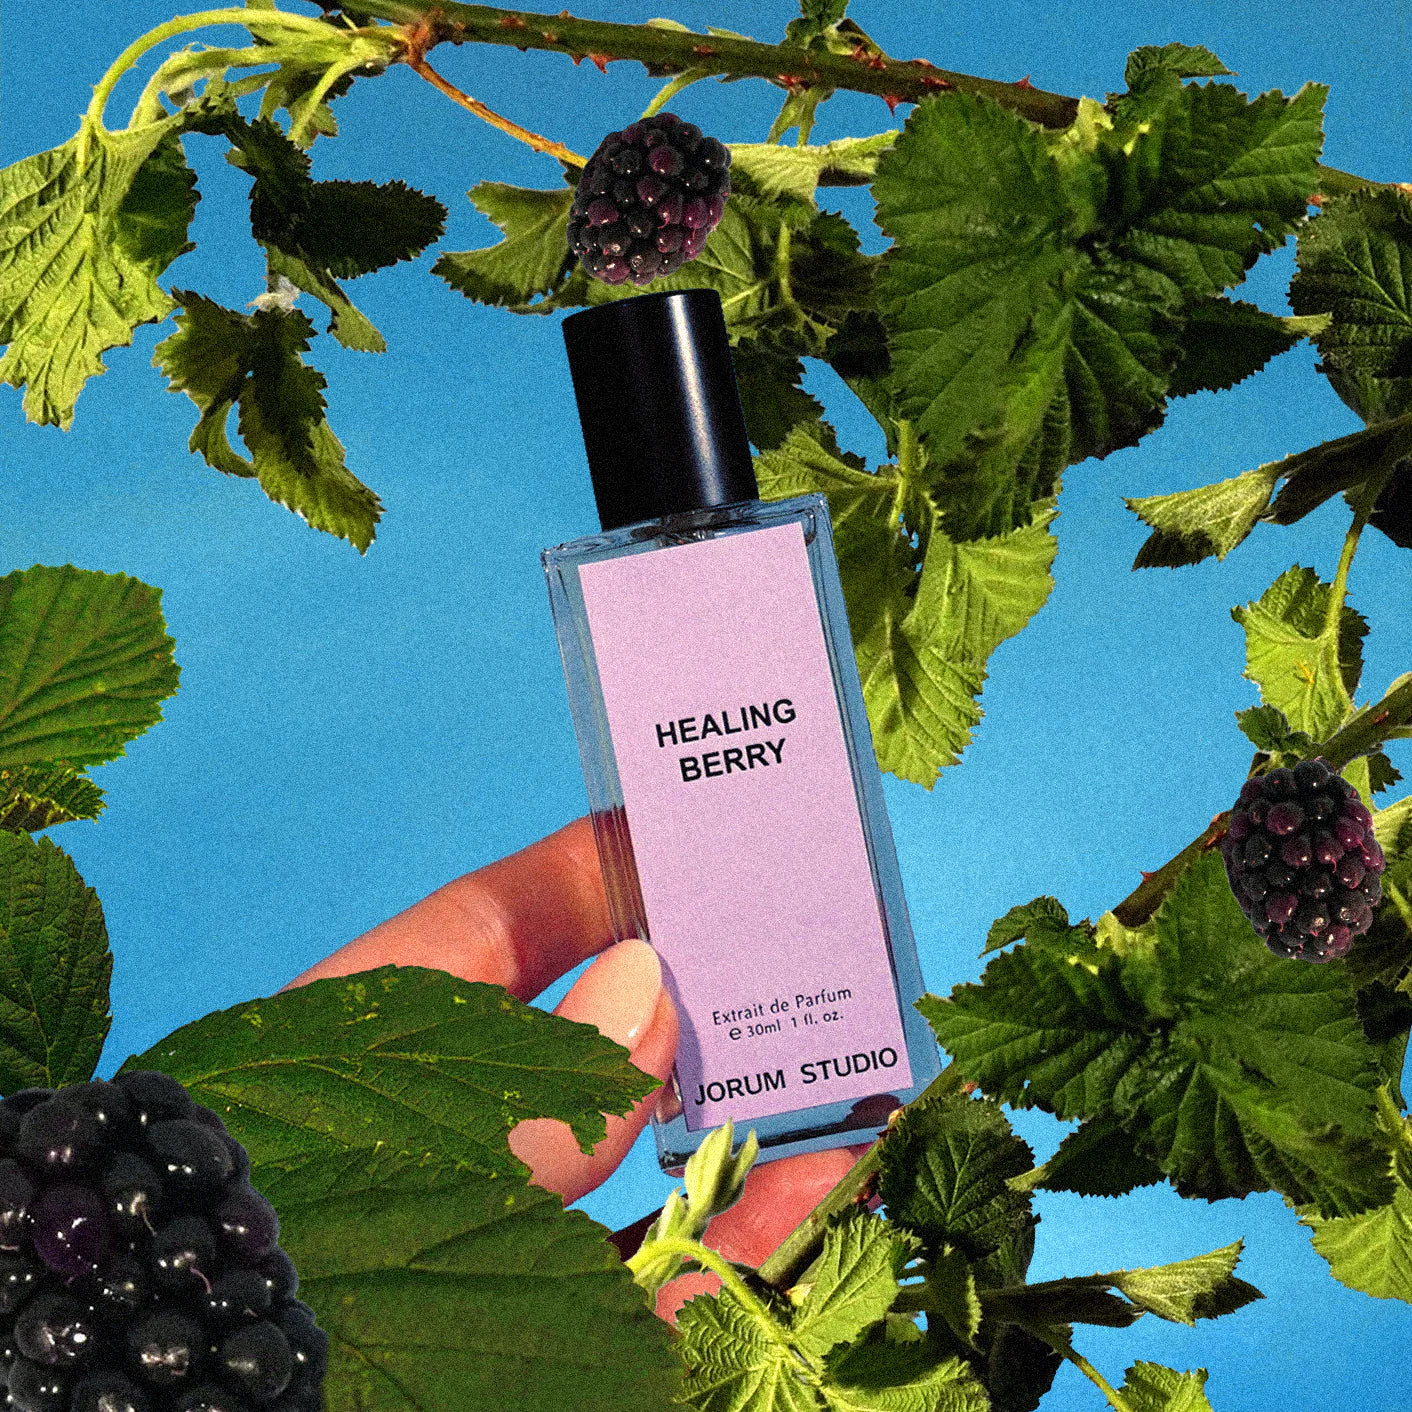 Jorum Studio Healing Berry Extrait de Parfum 30ml